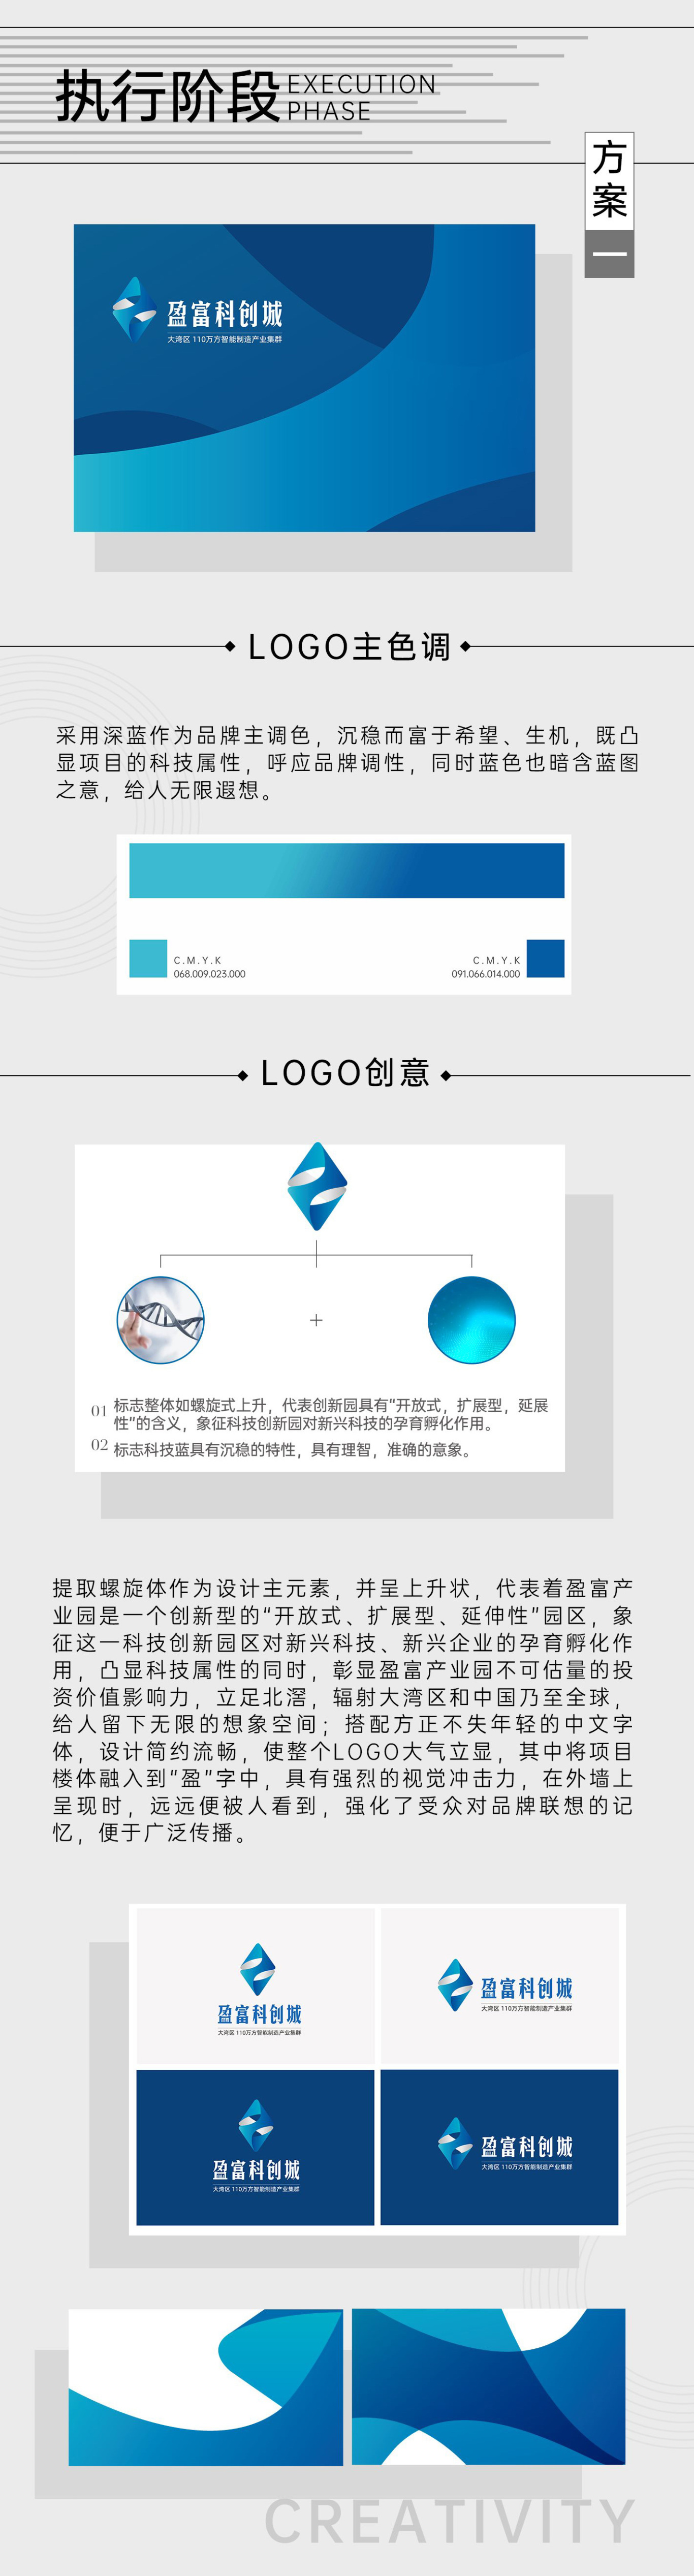 『盈富產業園』地產品牌包裝企業VI設計 LOGO設計(方案一)圖1